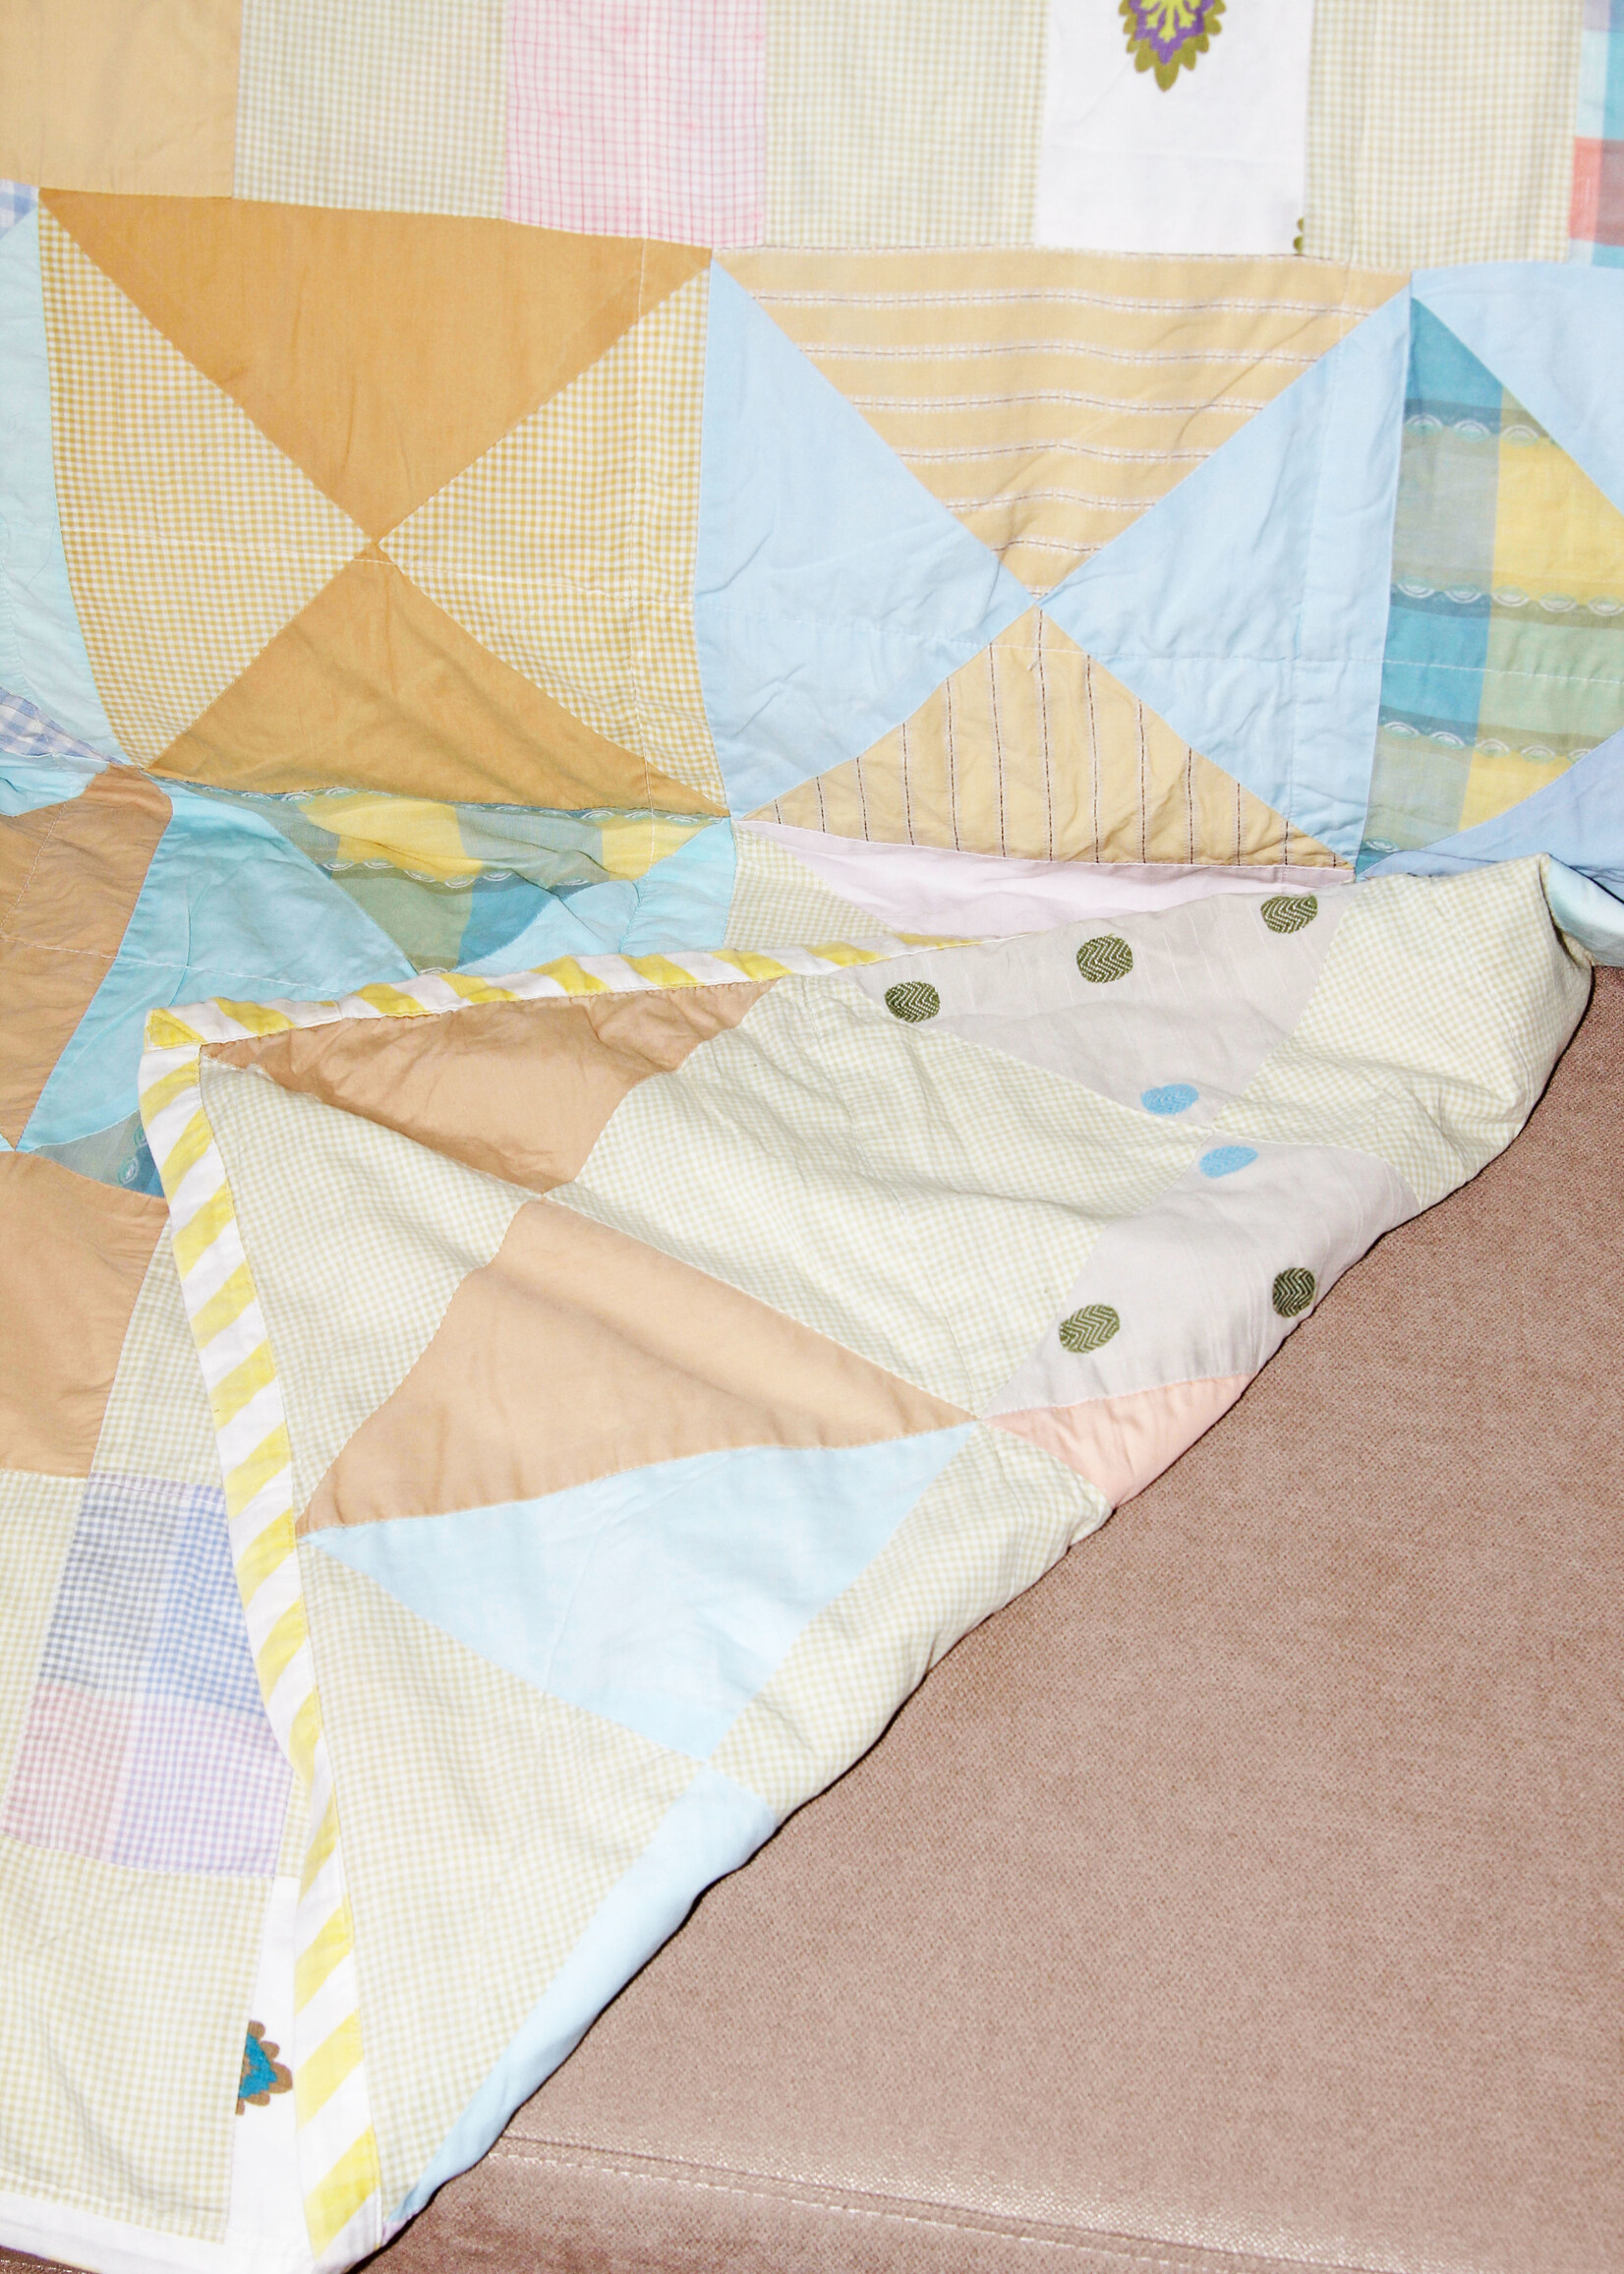 Vintage Vintage Pastel Patchwork Quilt Blanket